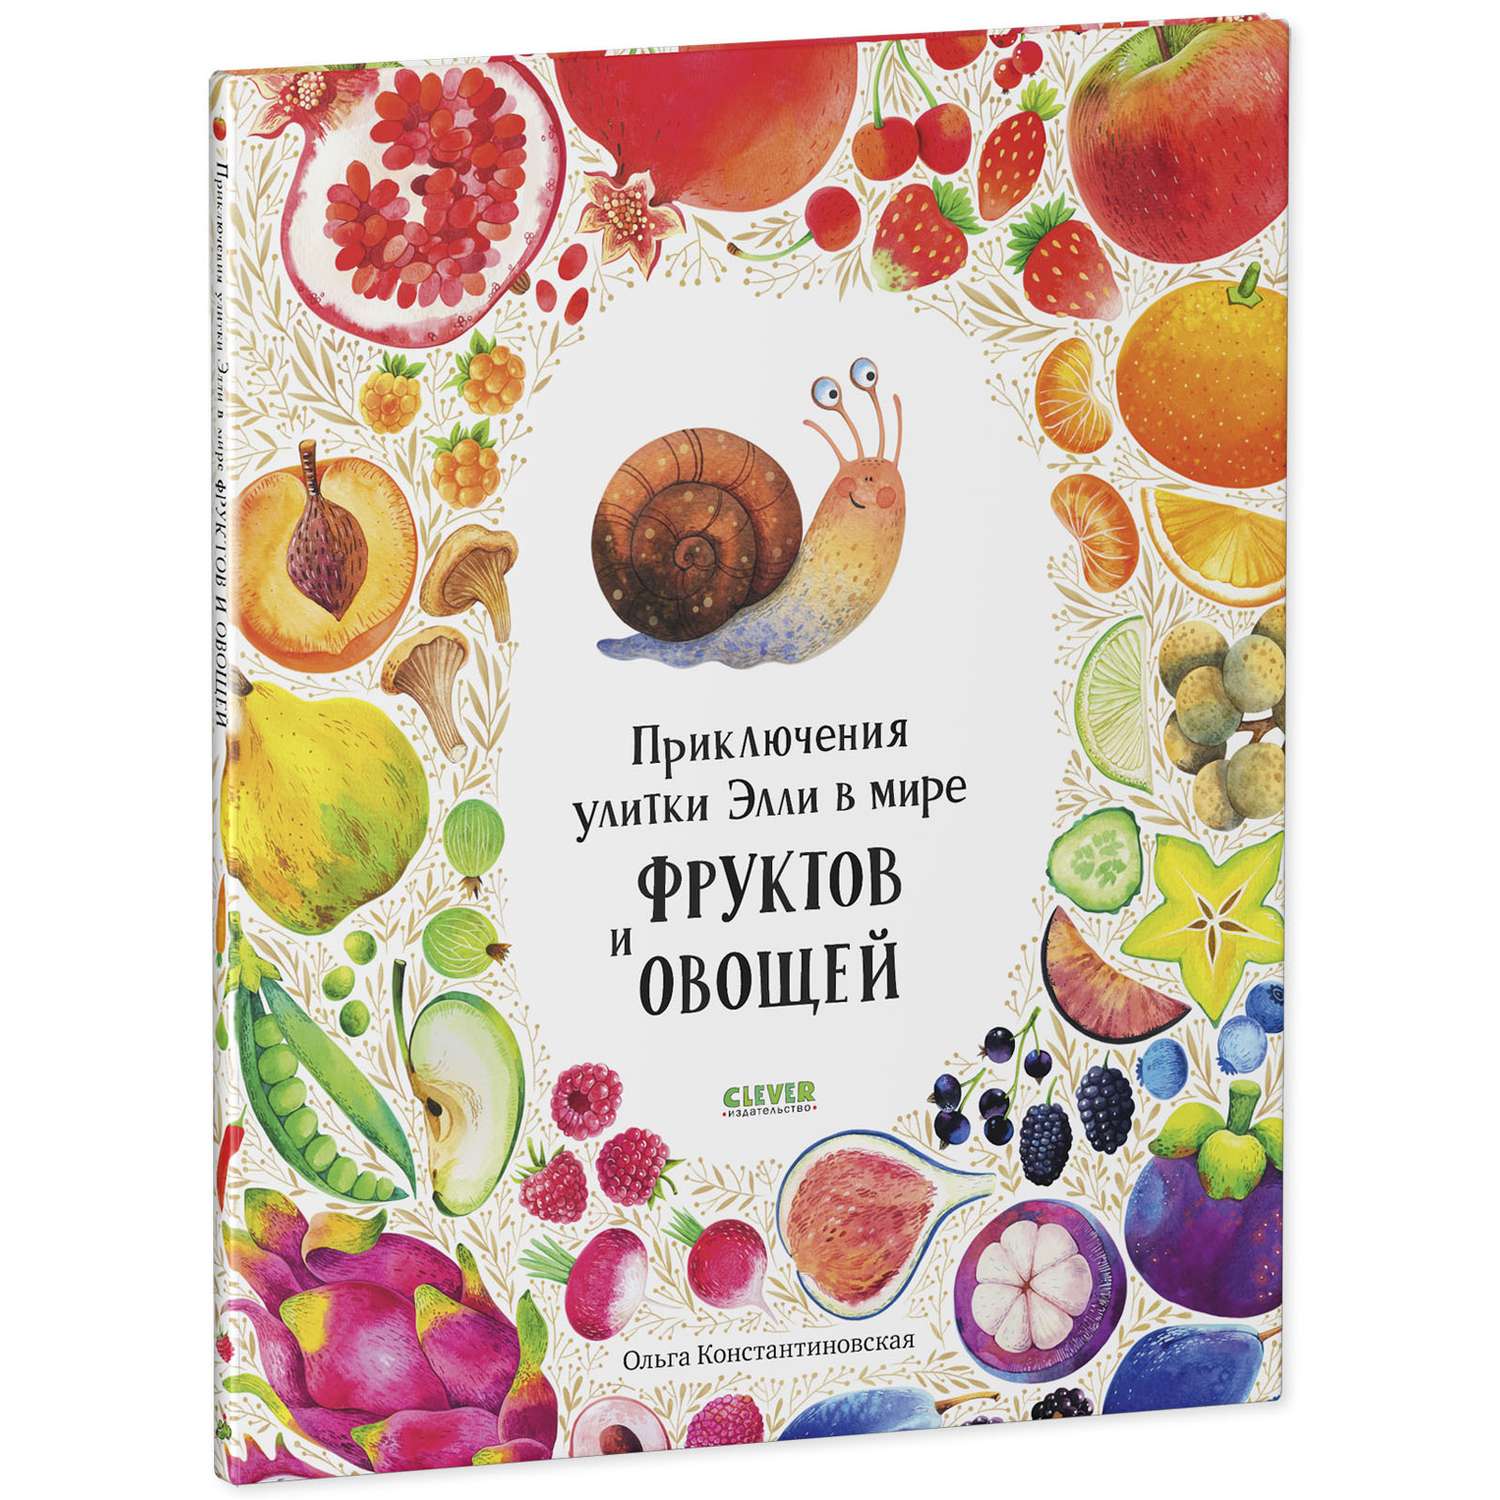 Книга Clever Издательство Приключения улитки Элли в мире фруктов и овощей - фото 2